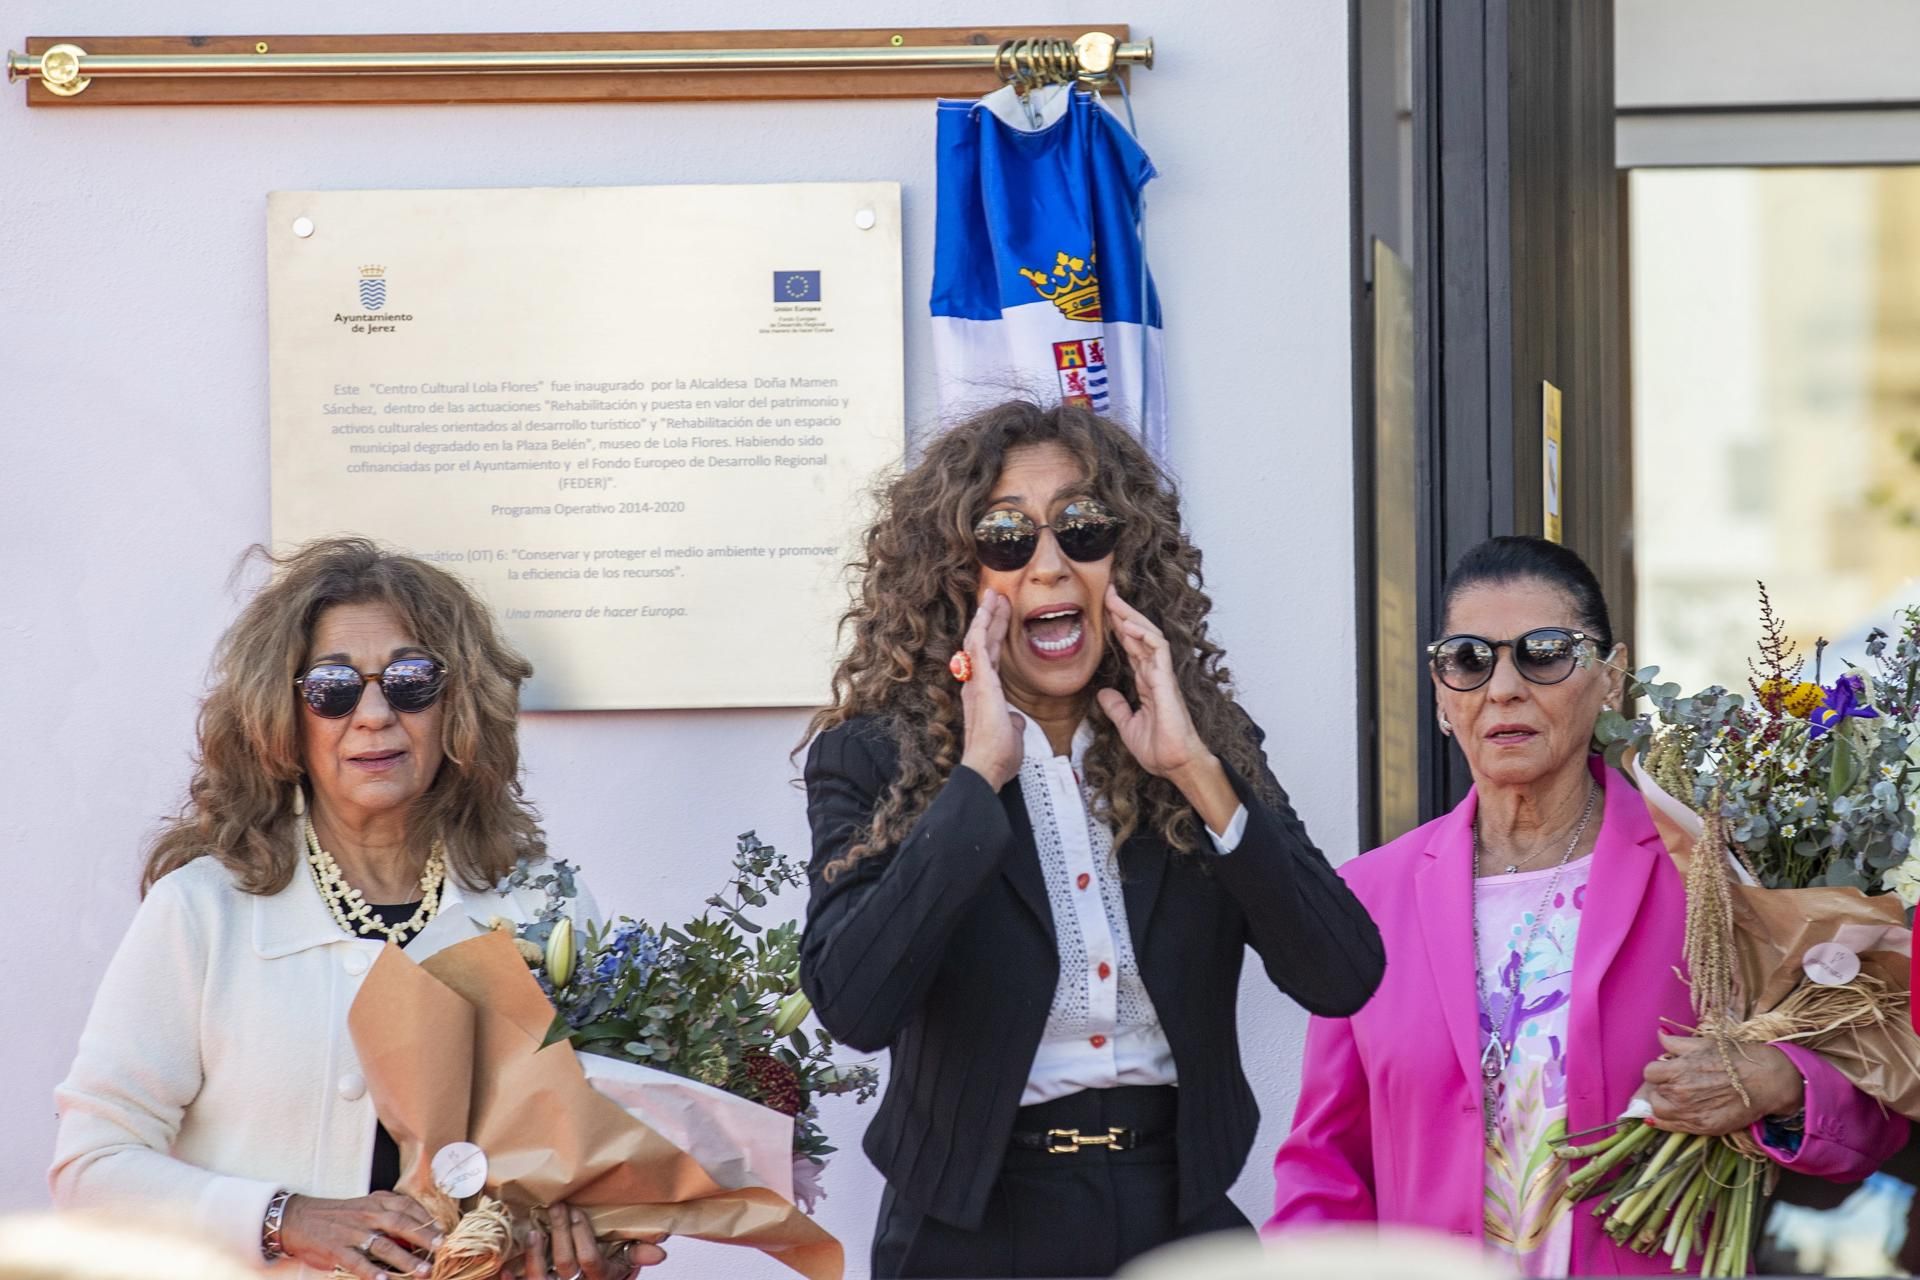 Las hijas de Lola Flores Lolita (i) y Rosario, y Carmen (d), hermana de Lola, tras descubrir una placa durante la inauguración hoy viernes en Jerez de la Frontera (Cádiz) del Centro Cultural Lola Flores.